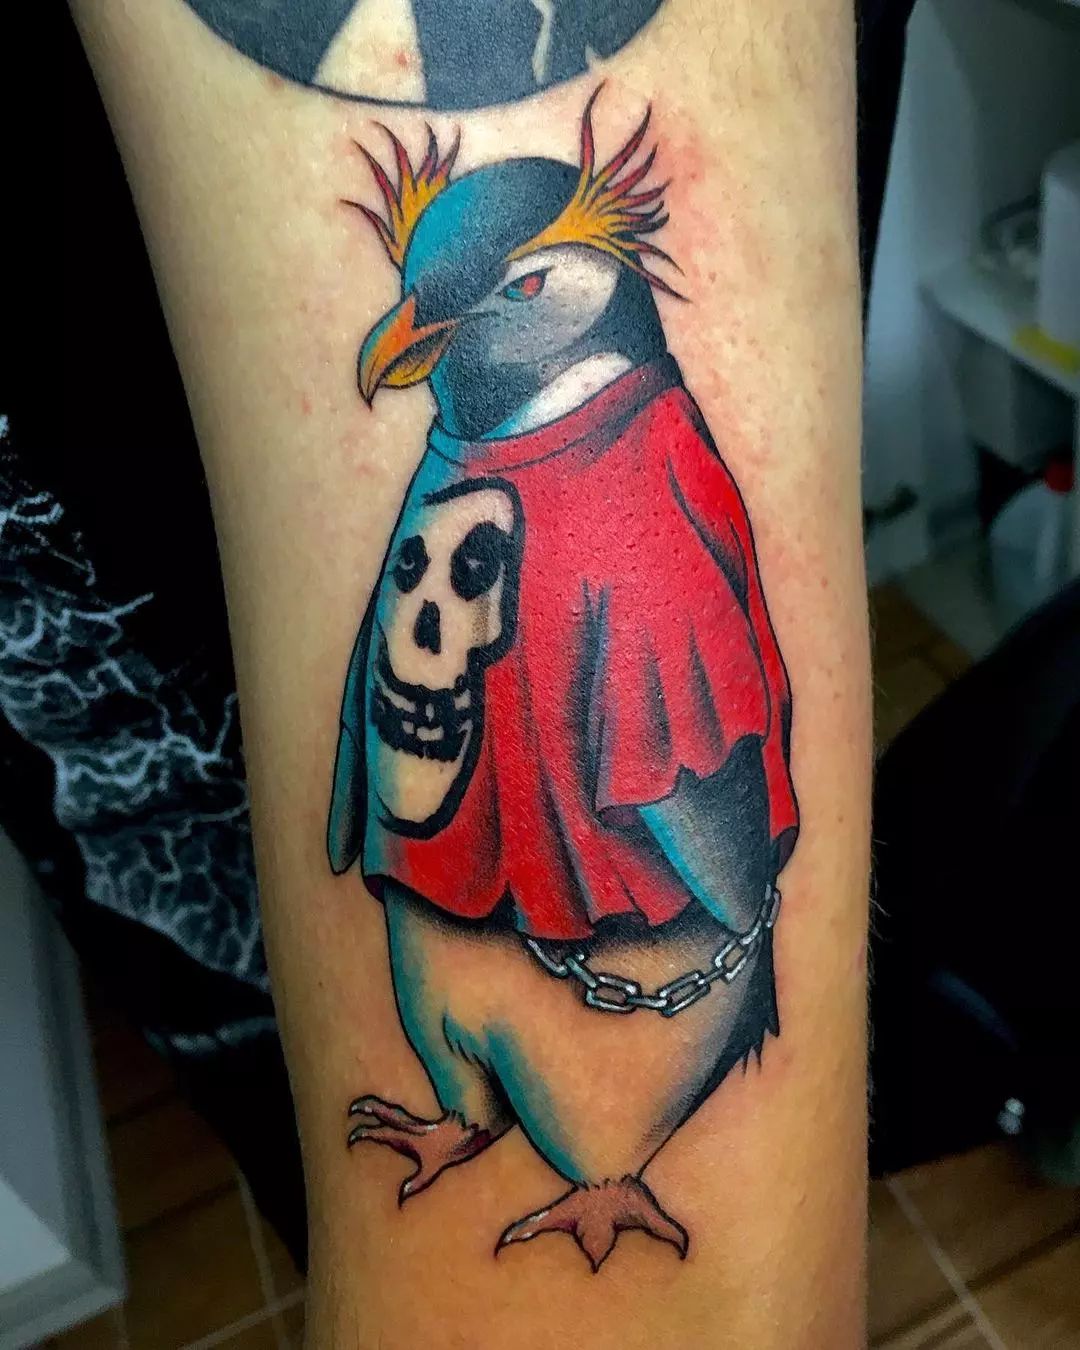 Tatuaje de pingüino genial.